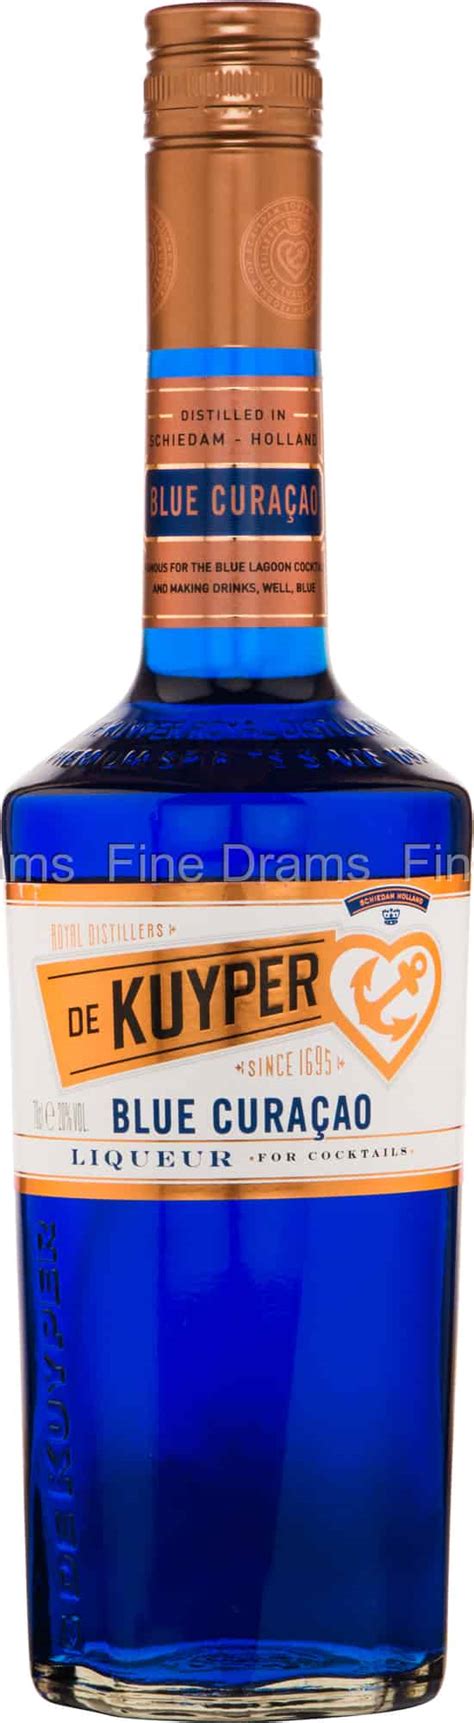 de kuyper blue curacao liqueur